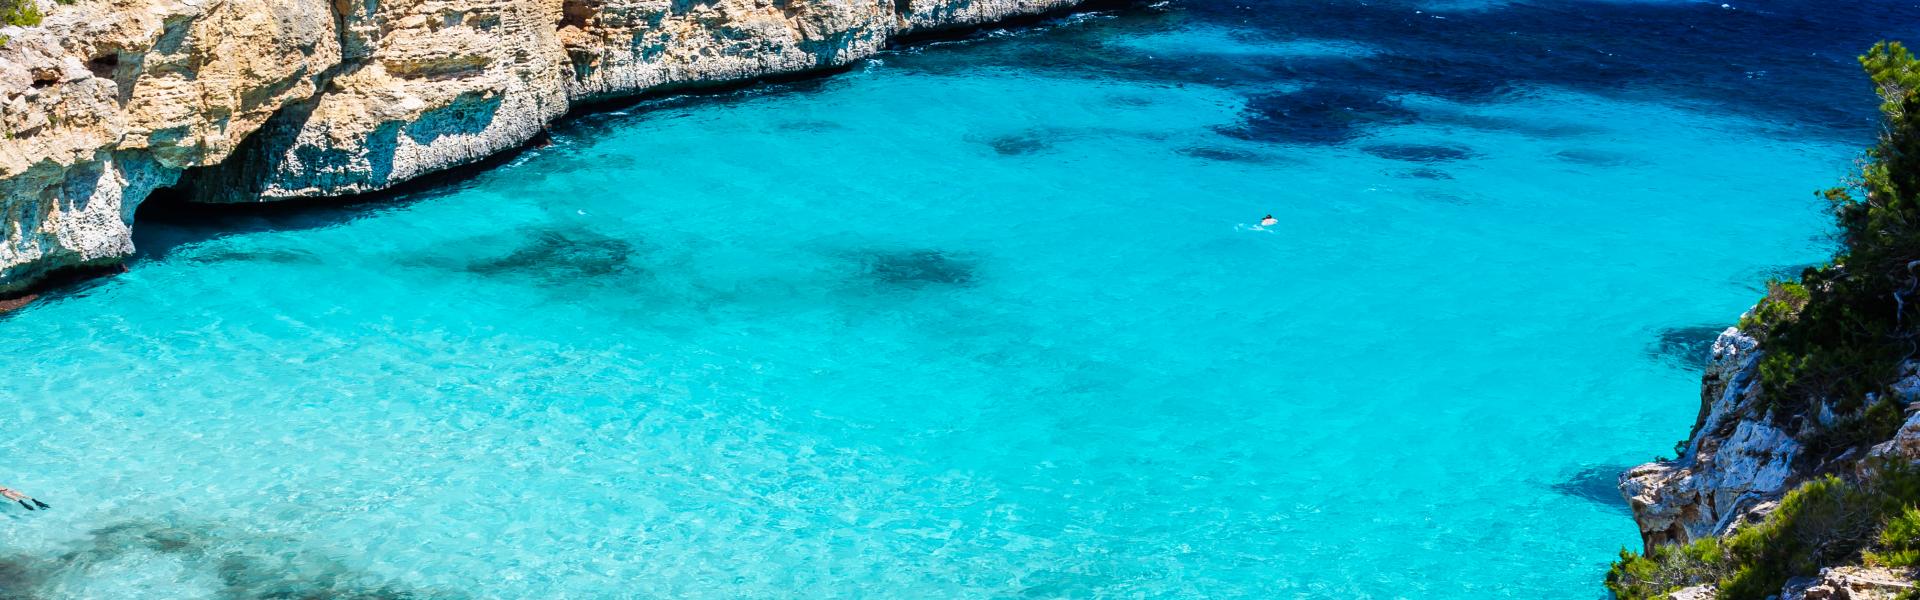 Vakantiehuis Mallorca – eiland in de zon - EuroRelais